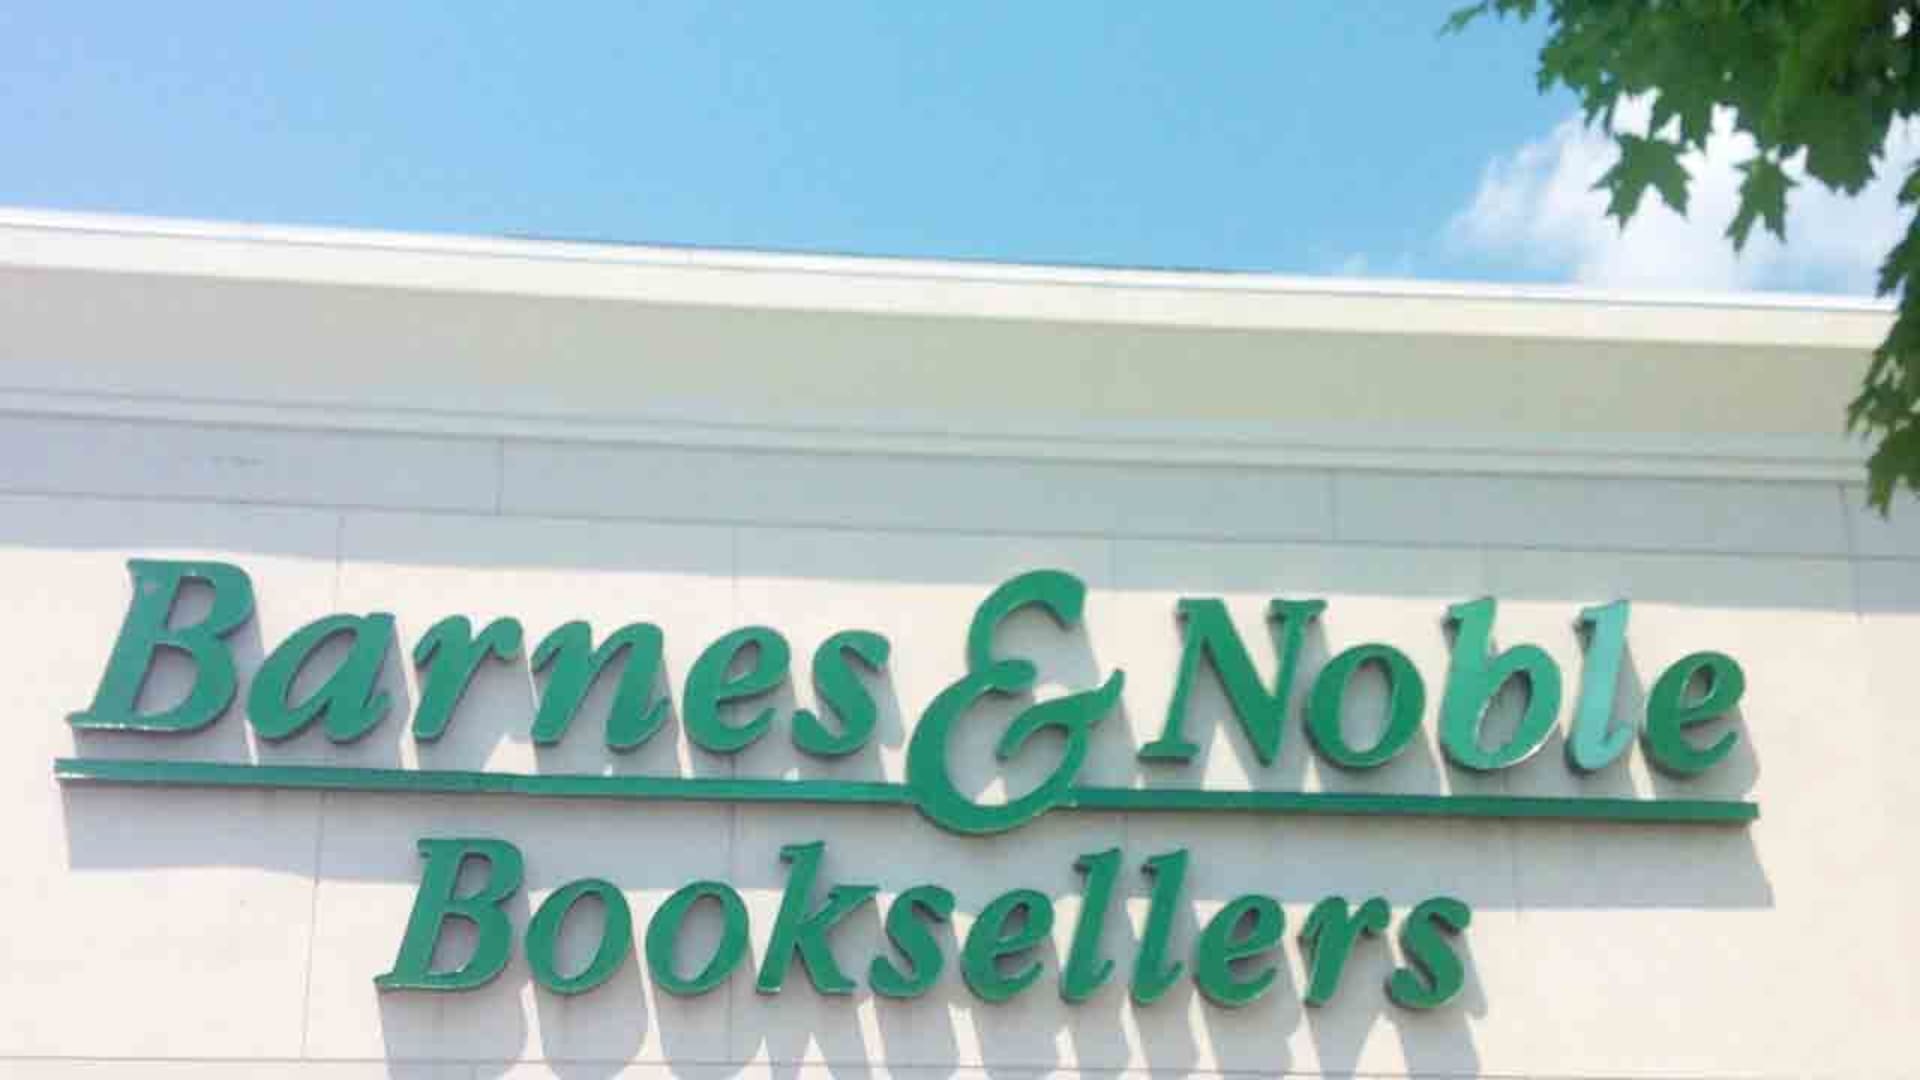 Barnes & Noble abruptly fires CEO Demos Parneros with no severance